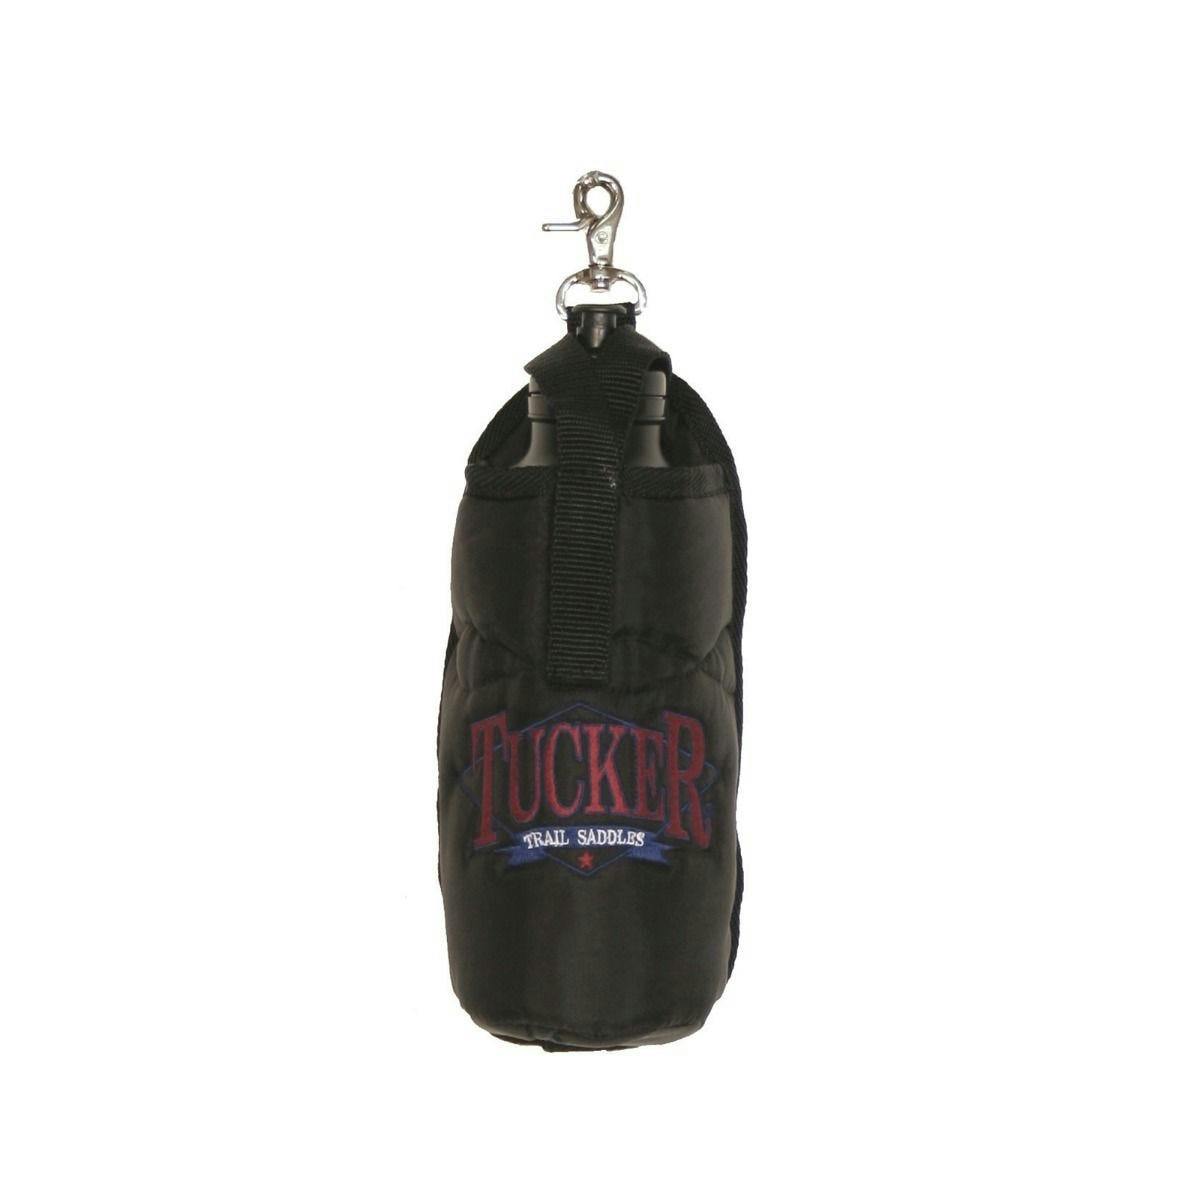 Tucker Water Bottle Carrier